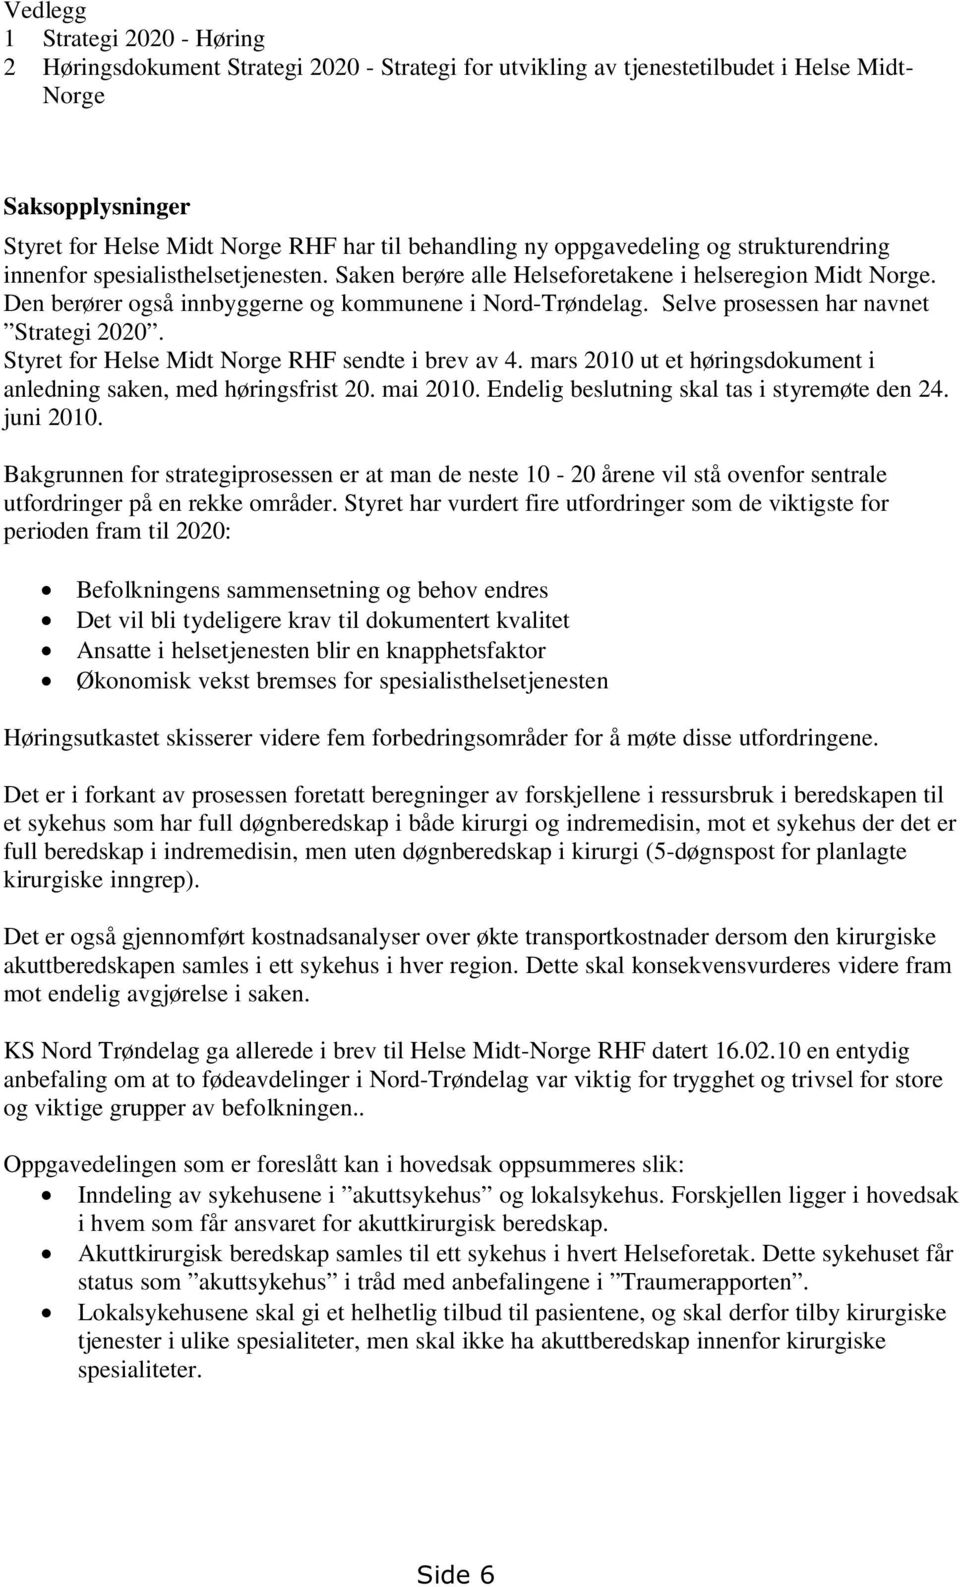 Selve prosessen har navnet Strategi 2020. Styret for Helse Midt Norge RHF sendte i brev av 4. mars 2010 ut et høringsdokument i anledning saken, med høringsfrist 20. mai 2010.